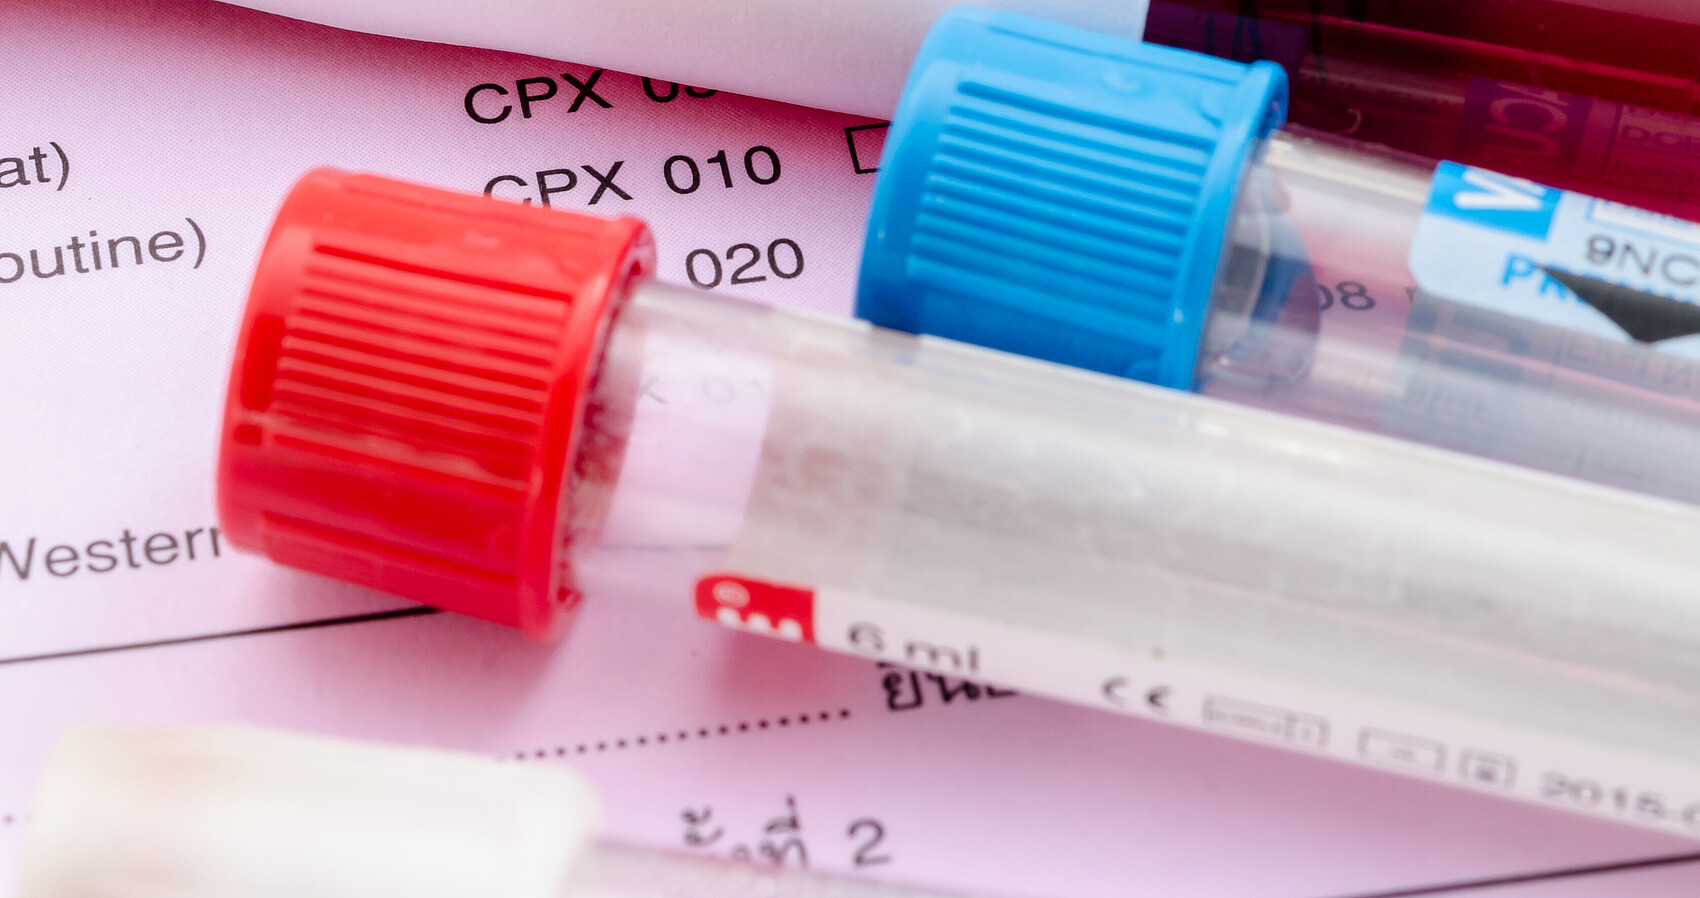 Blutentnahmeröhrchen mit HIV-Testetikett